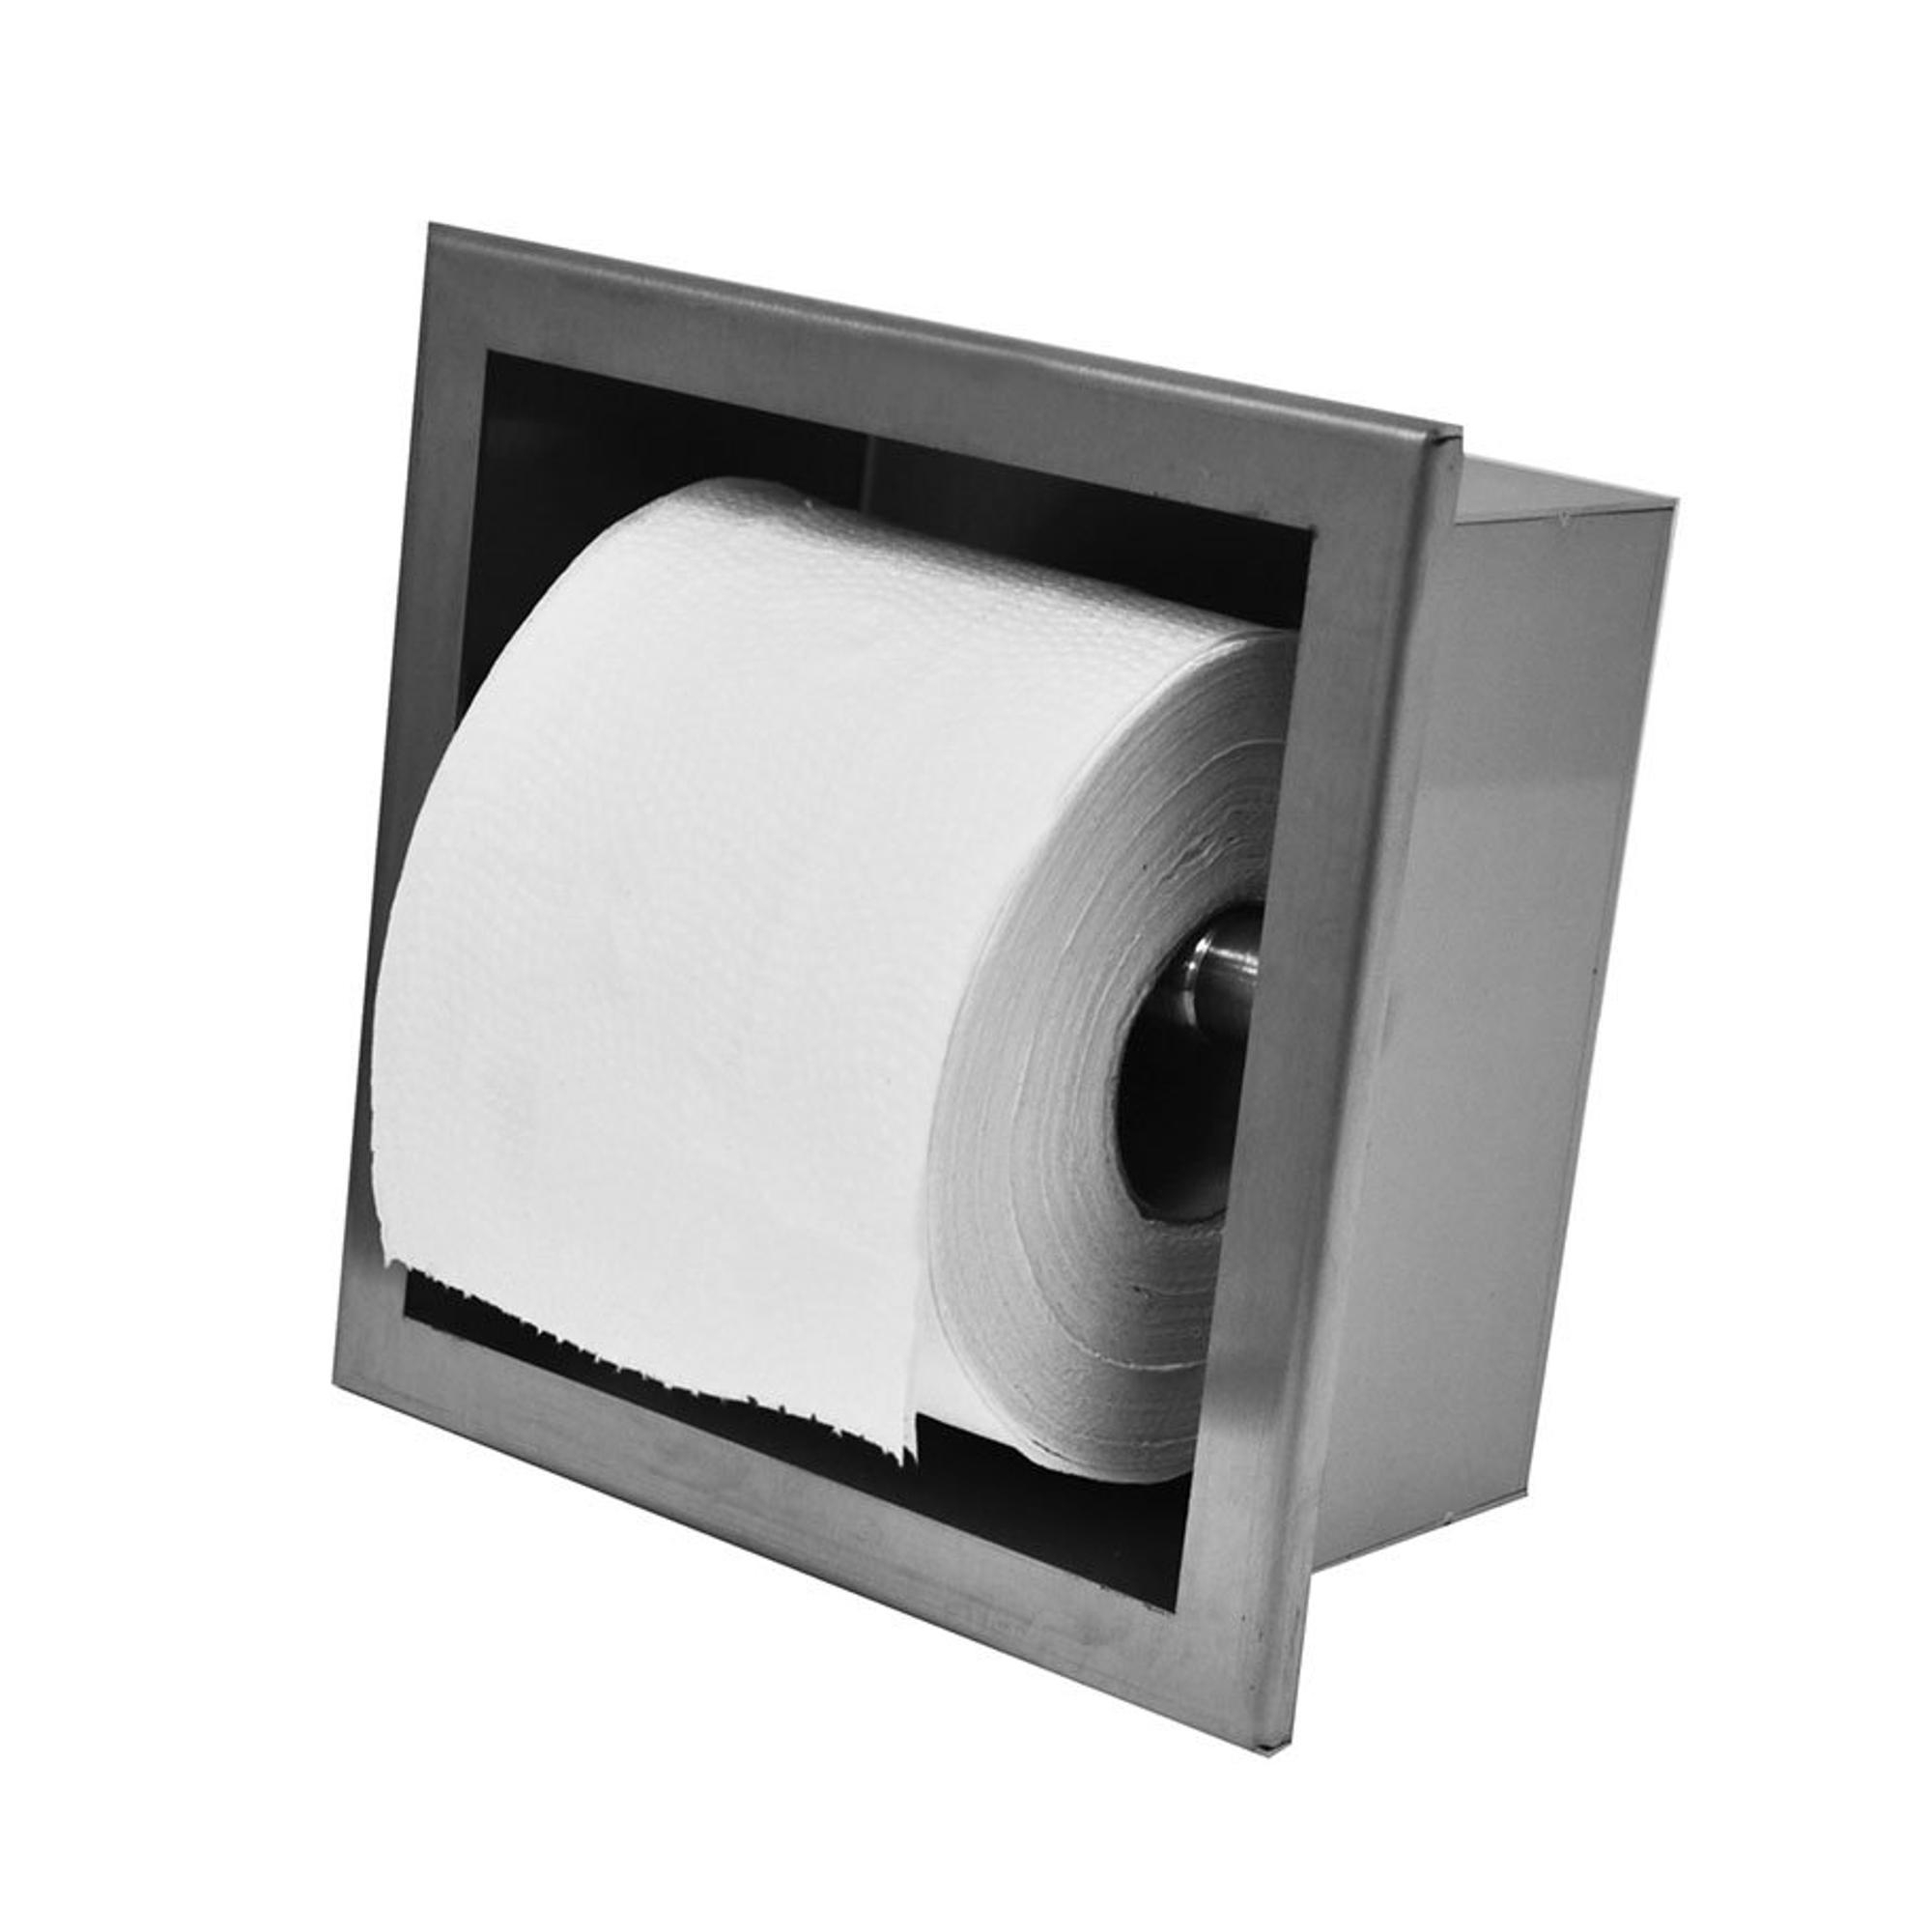 Double porte rouleaux de papier WC standard encastré en inox - SUPRATECH